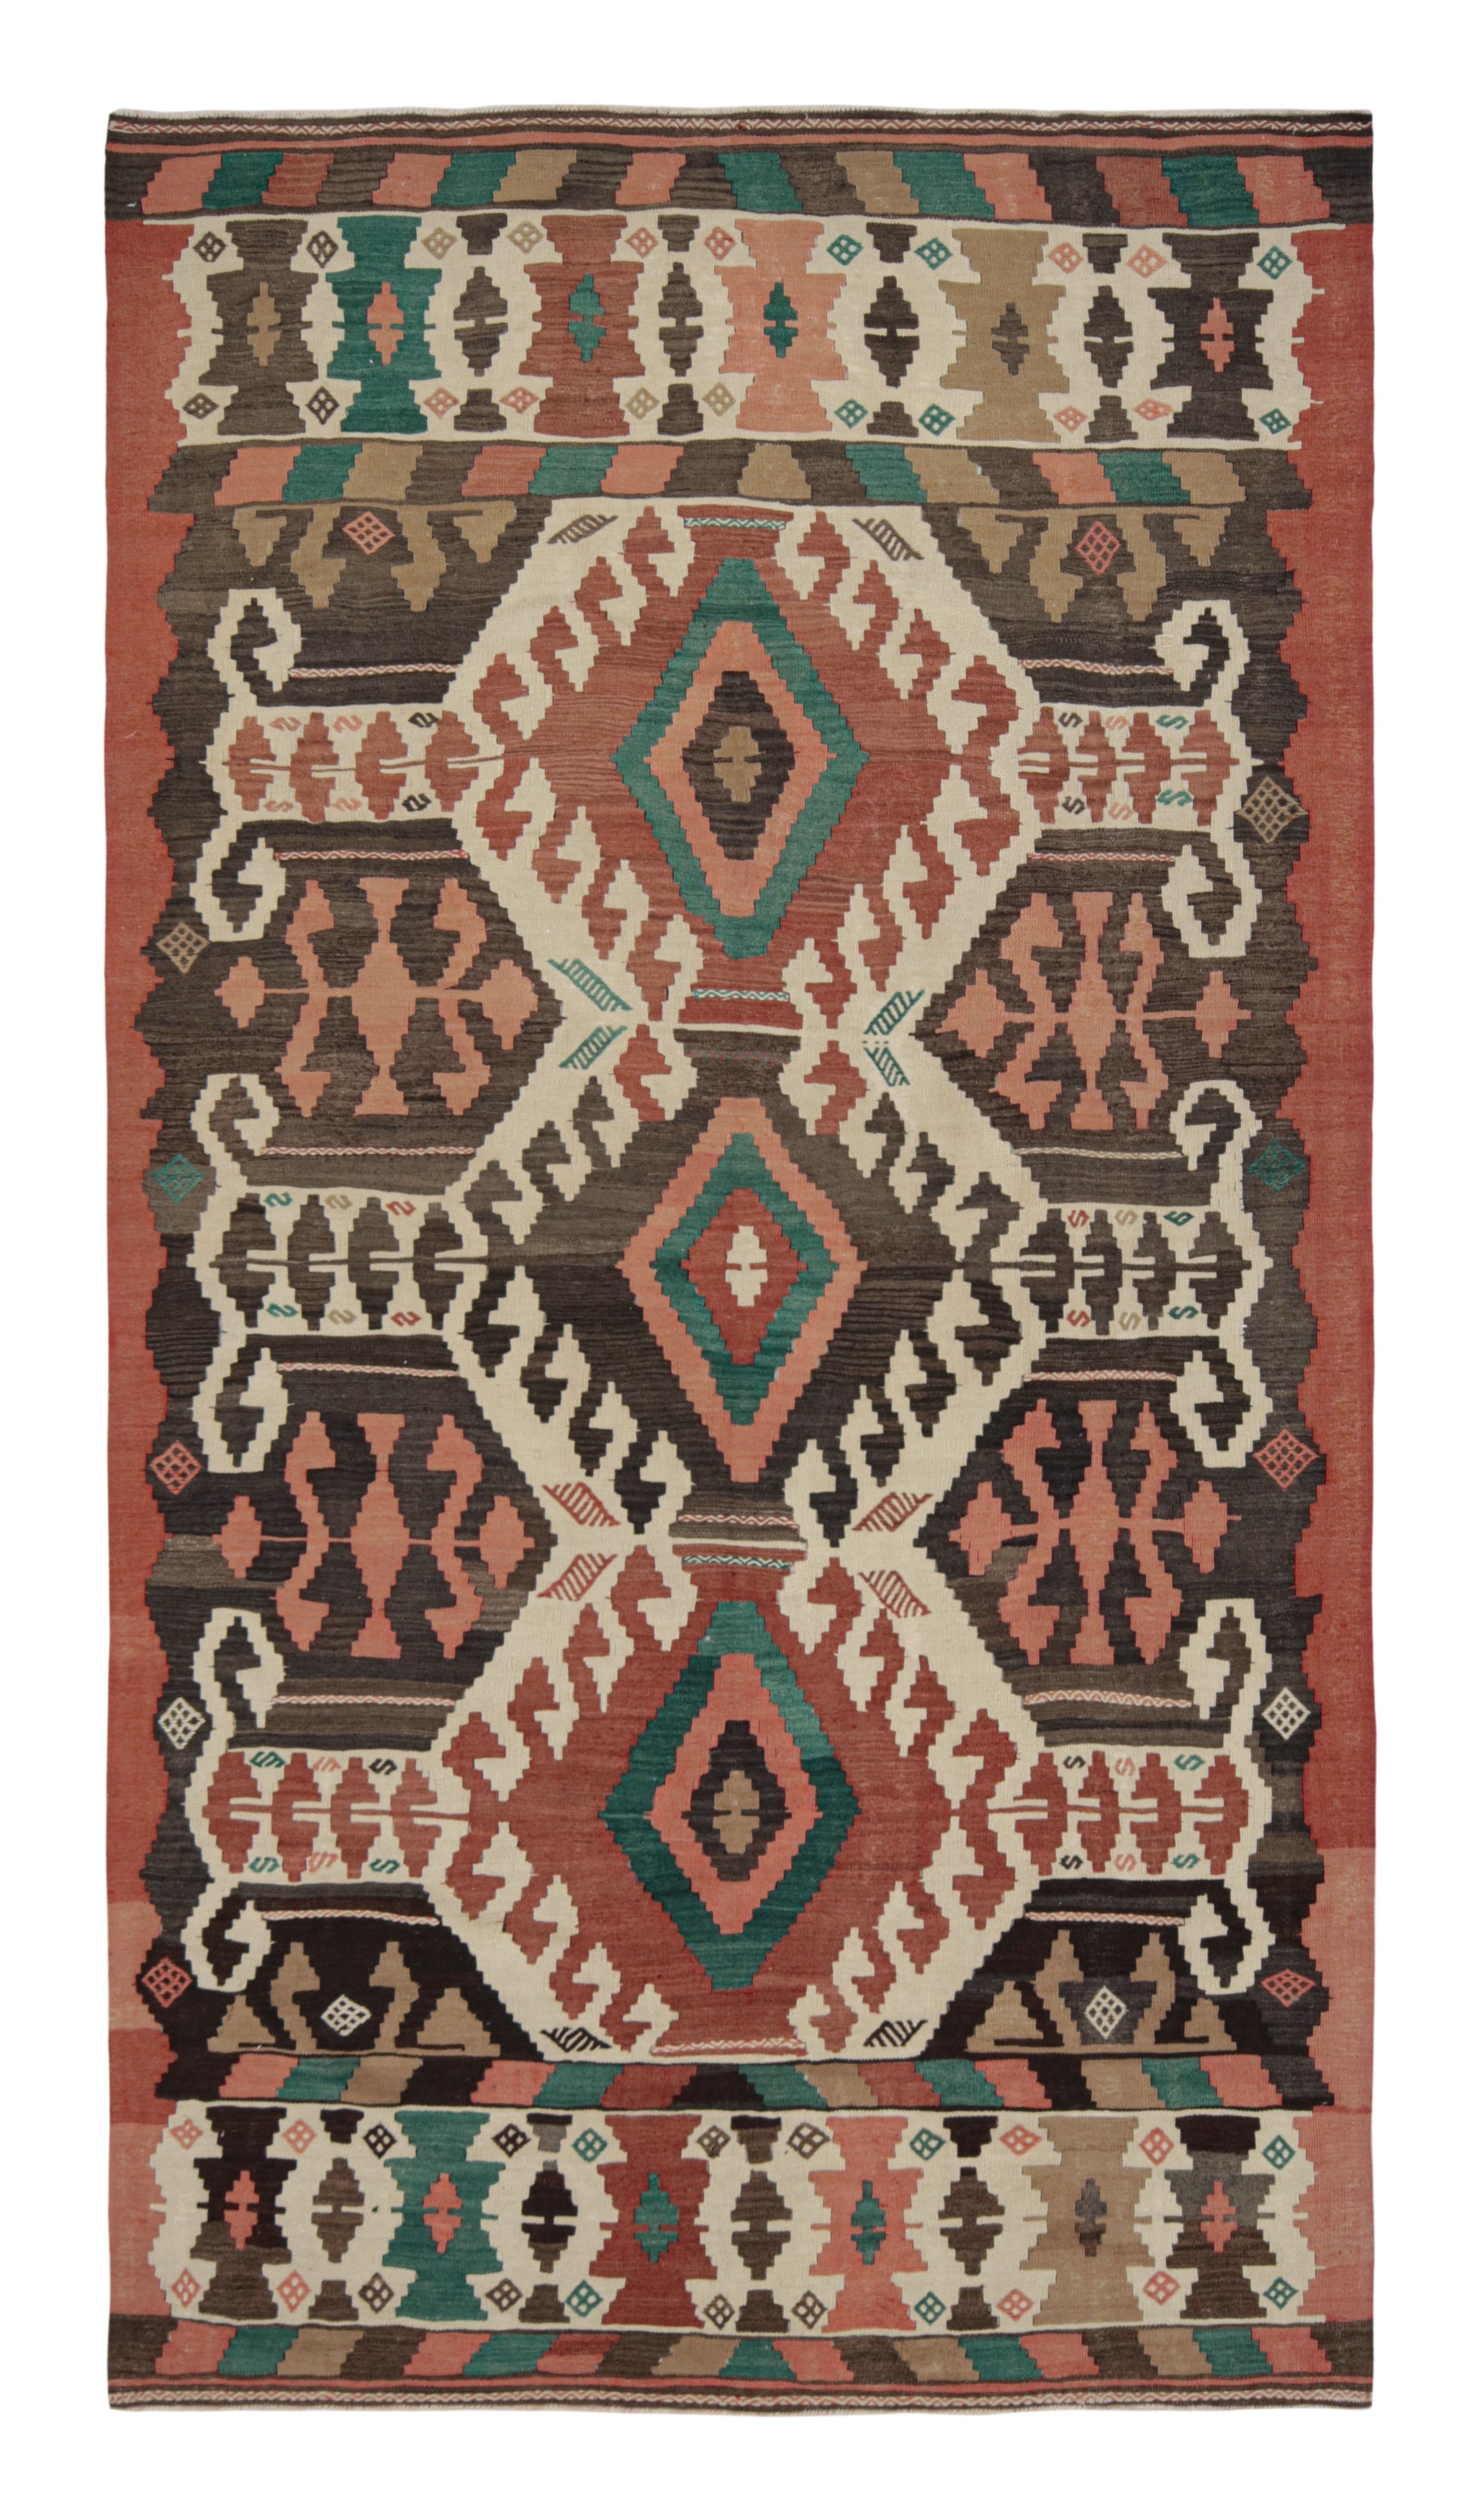 Midcentury Vintage Kilim Rug in Beige Tribal Geometric Pattern by Rug & Kilim For Sale